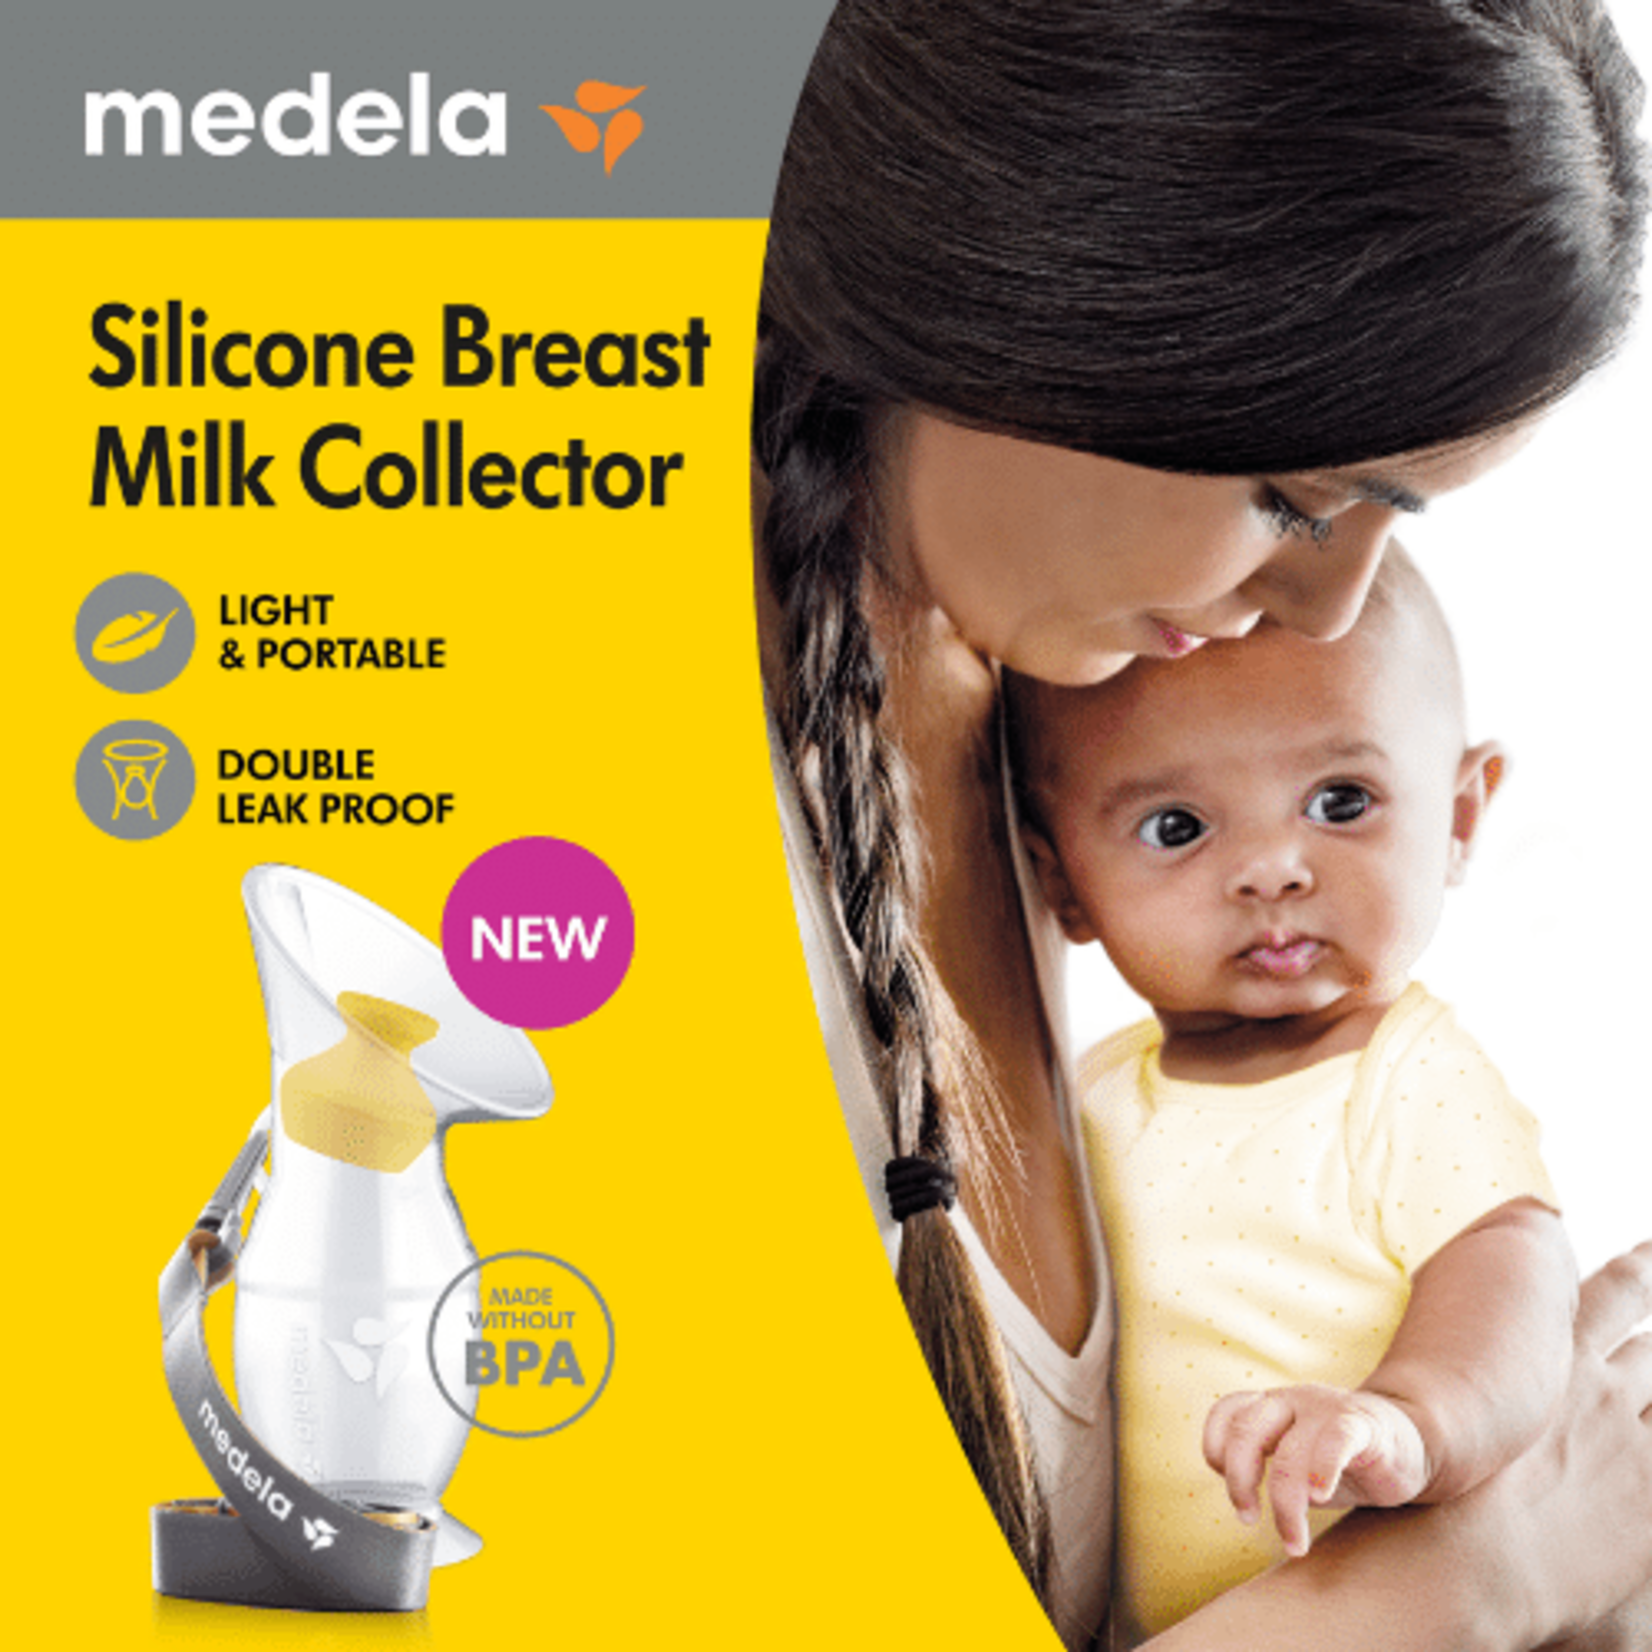 Medela Silicone Breast Milk Collector